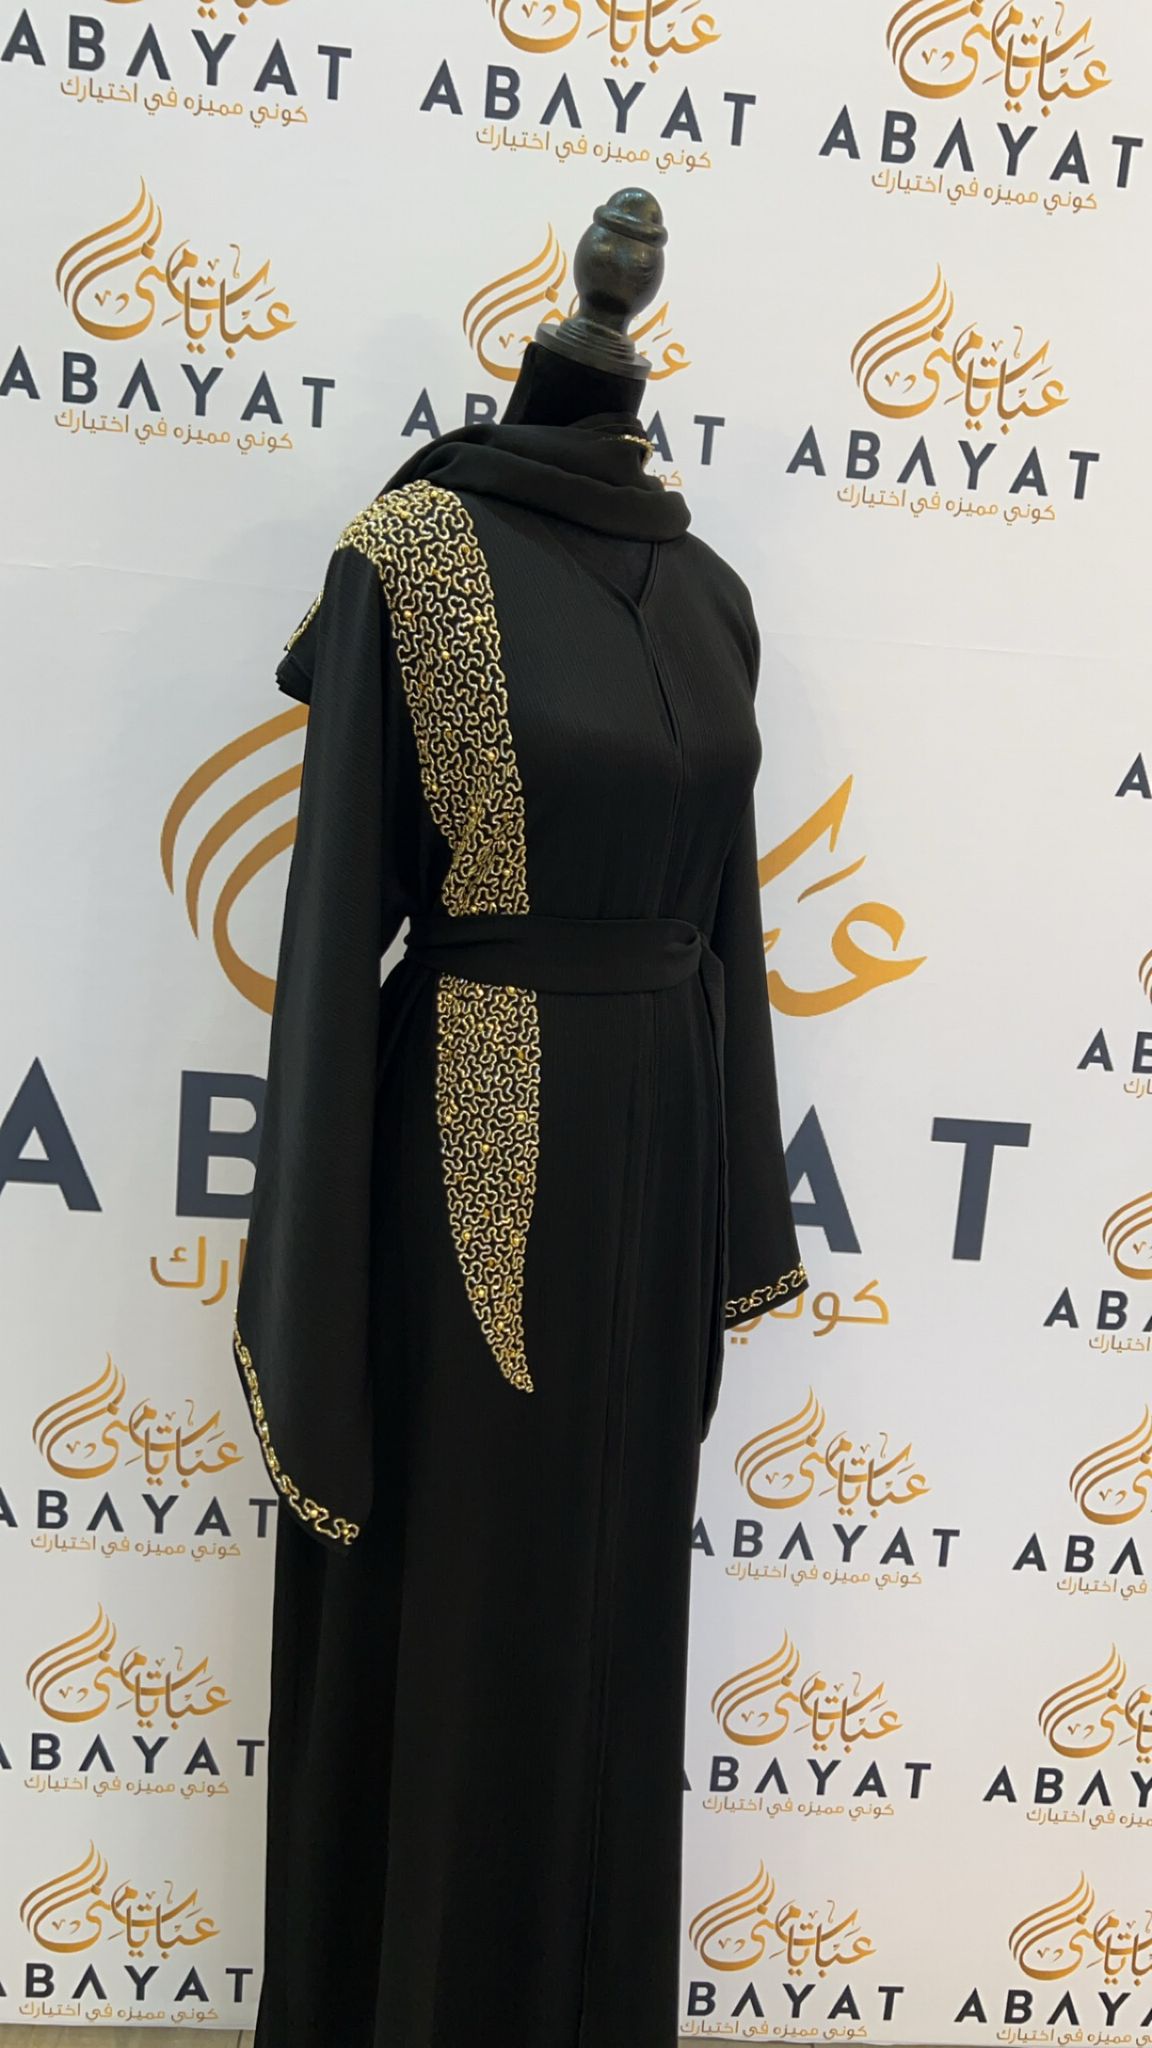 Elegant Black and Gold Abaya